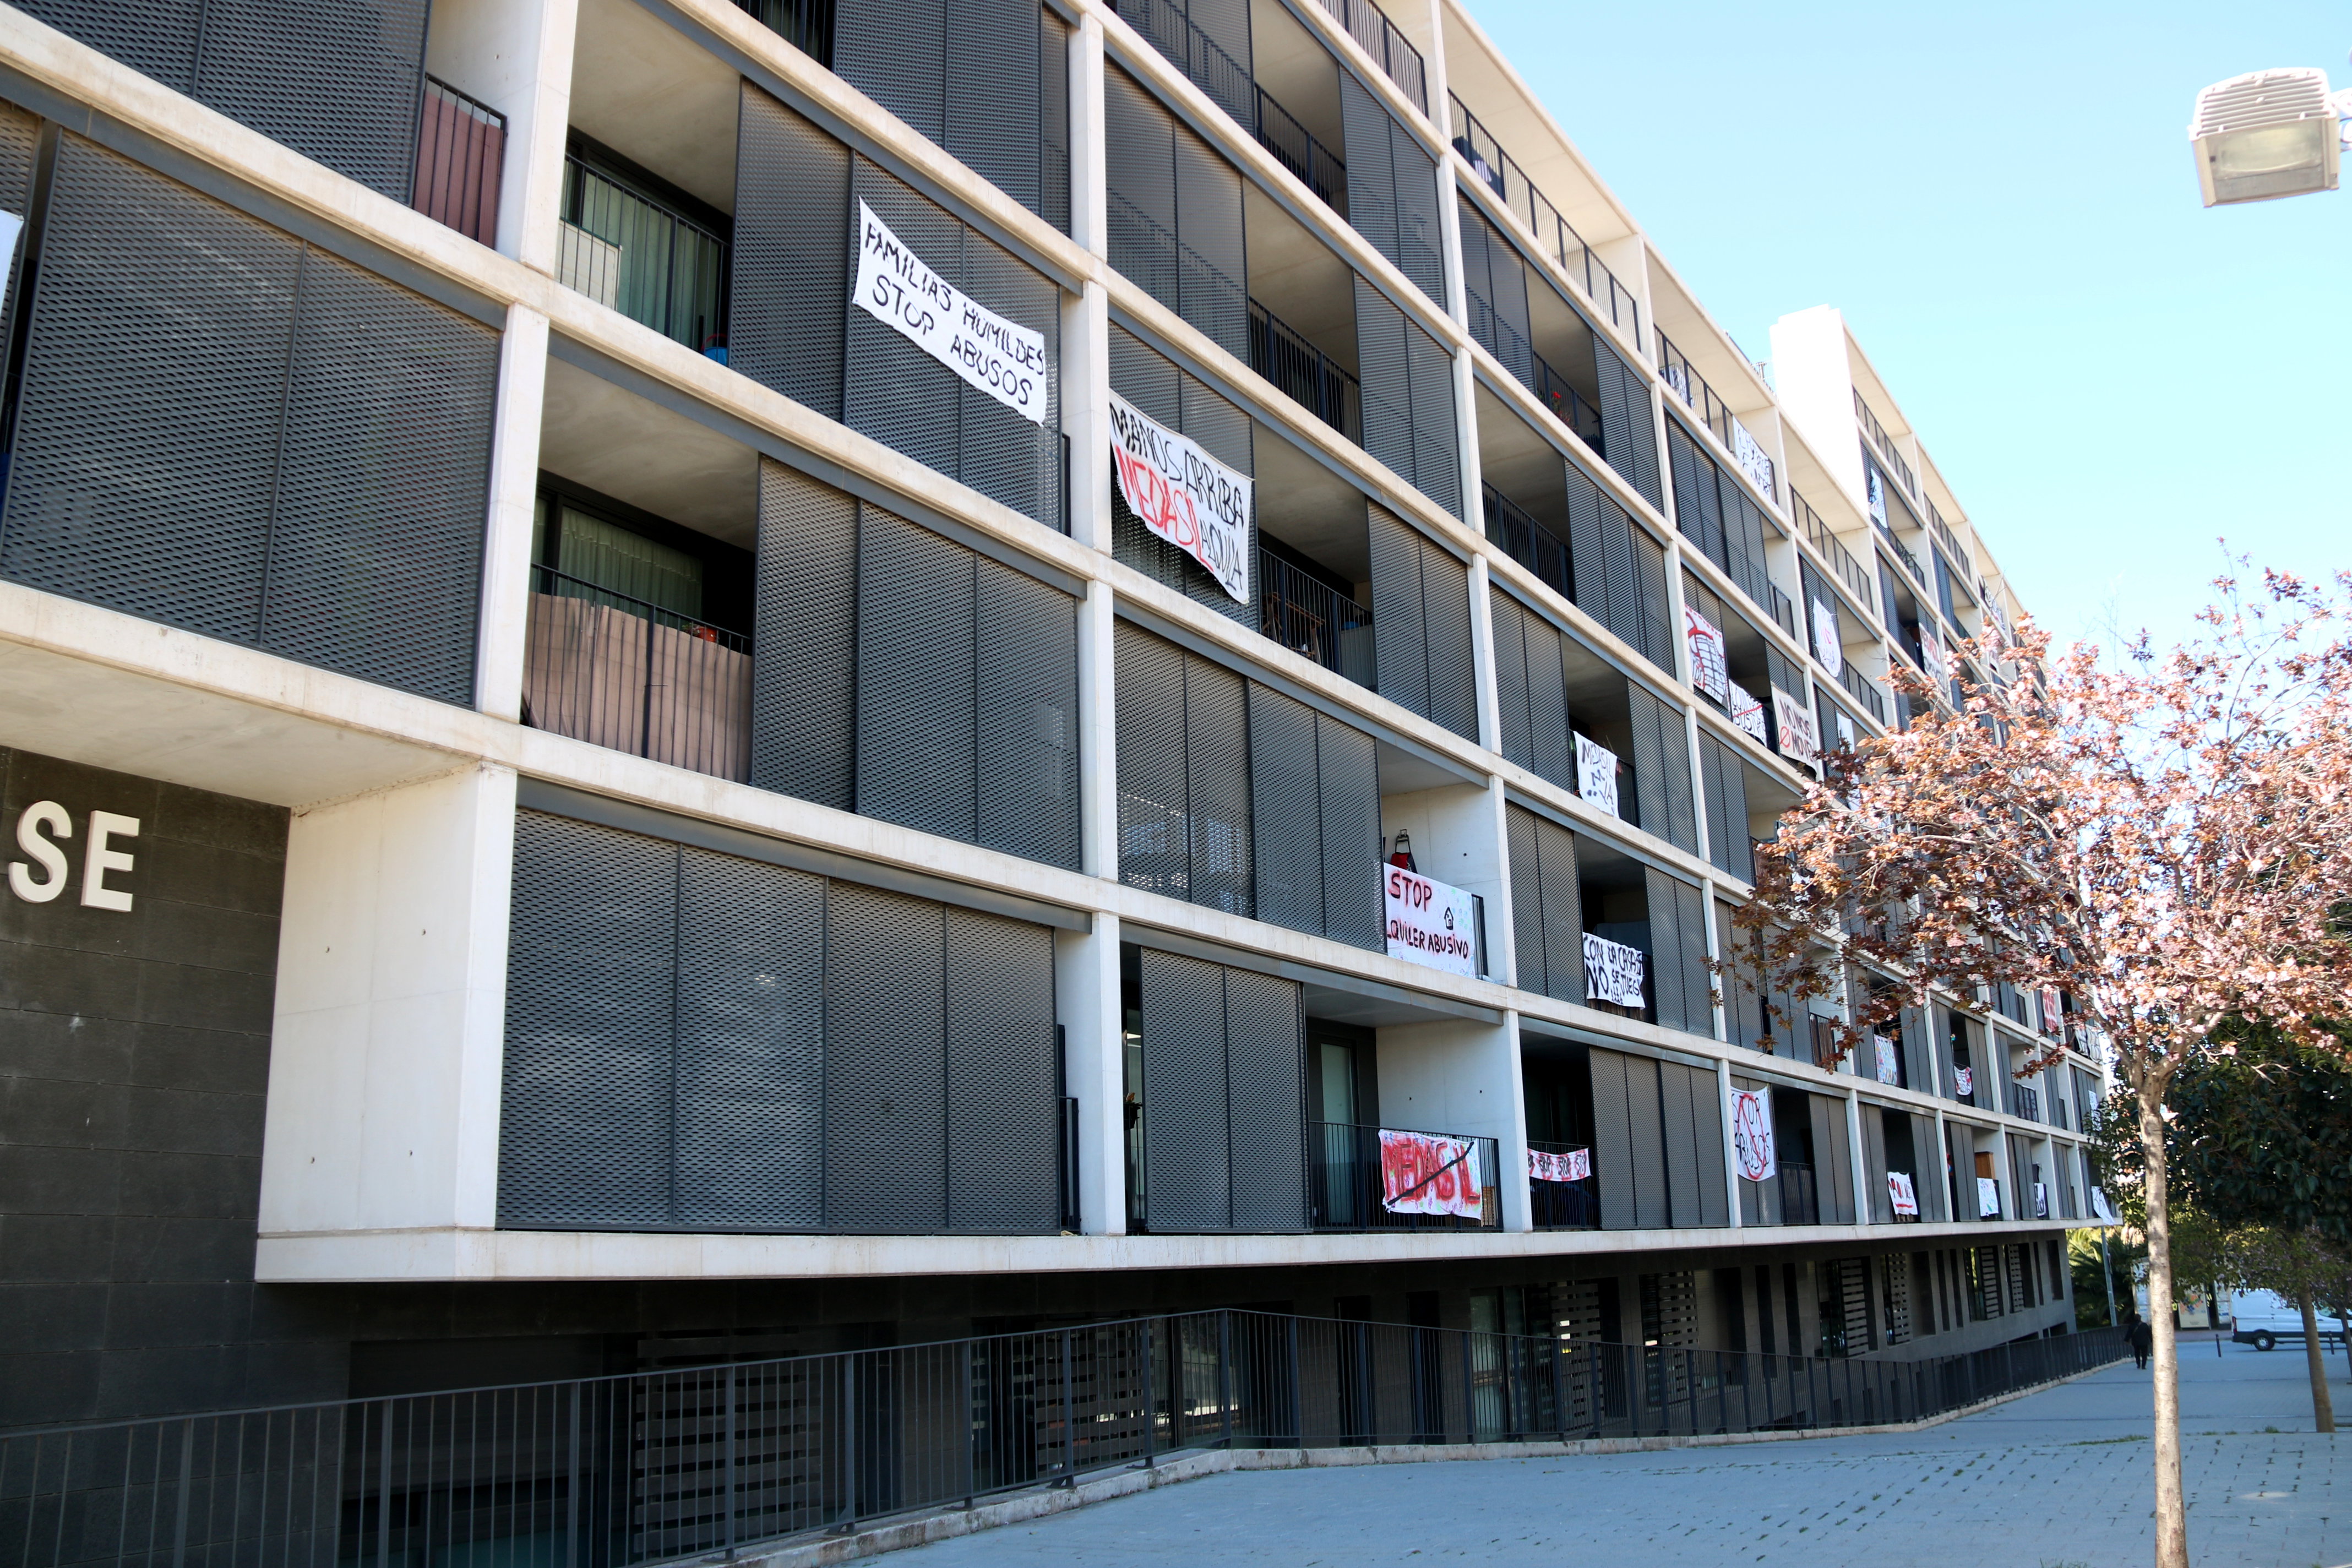 Bloc de pisos de Sant Joan Despí afectat per una elevada pujada dels preus dels lloguers